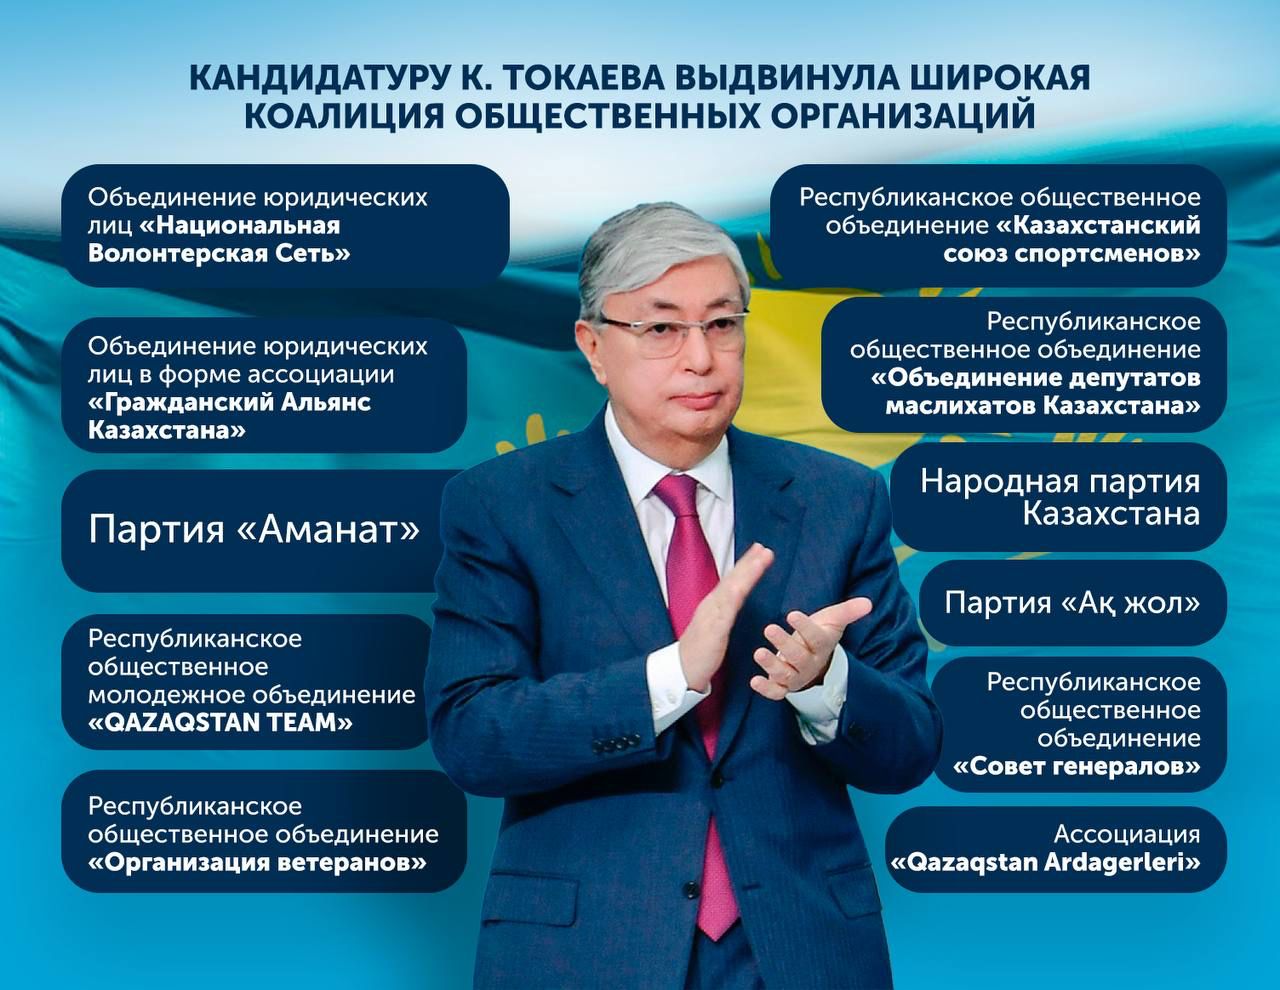 Кандидатуру К. Токаева выдвинула широкая коалиция общественных организаций.